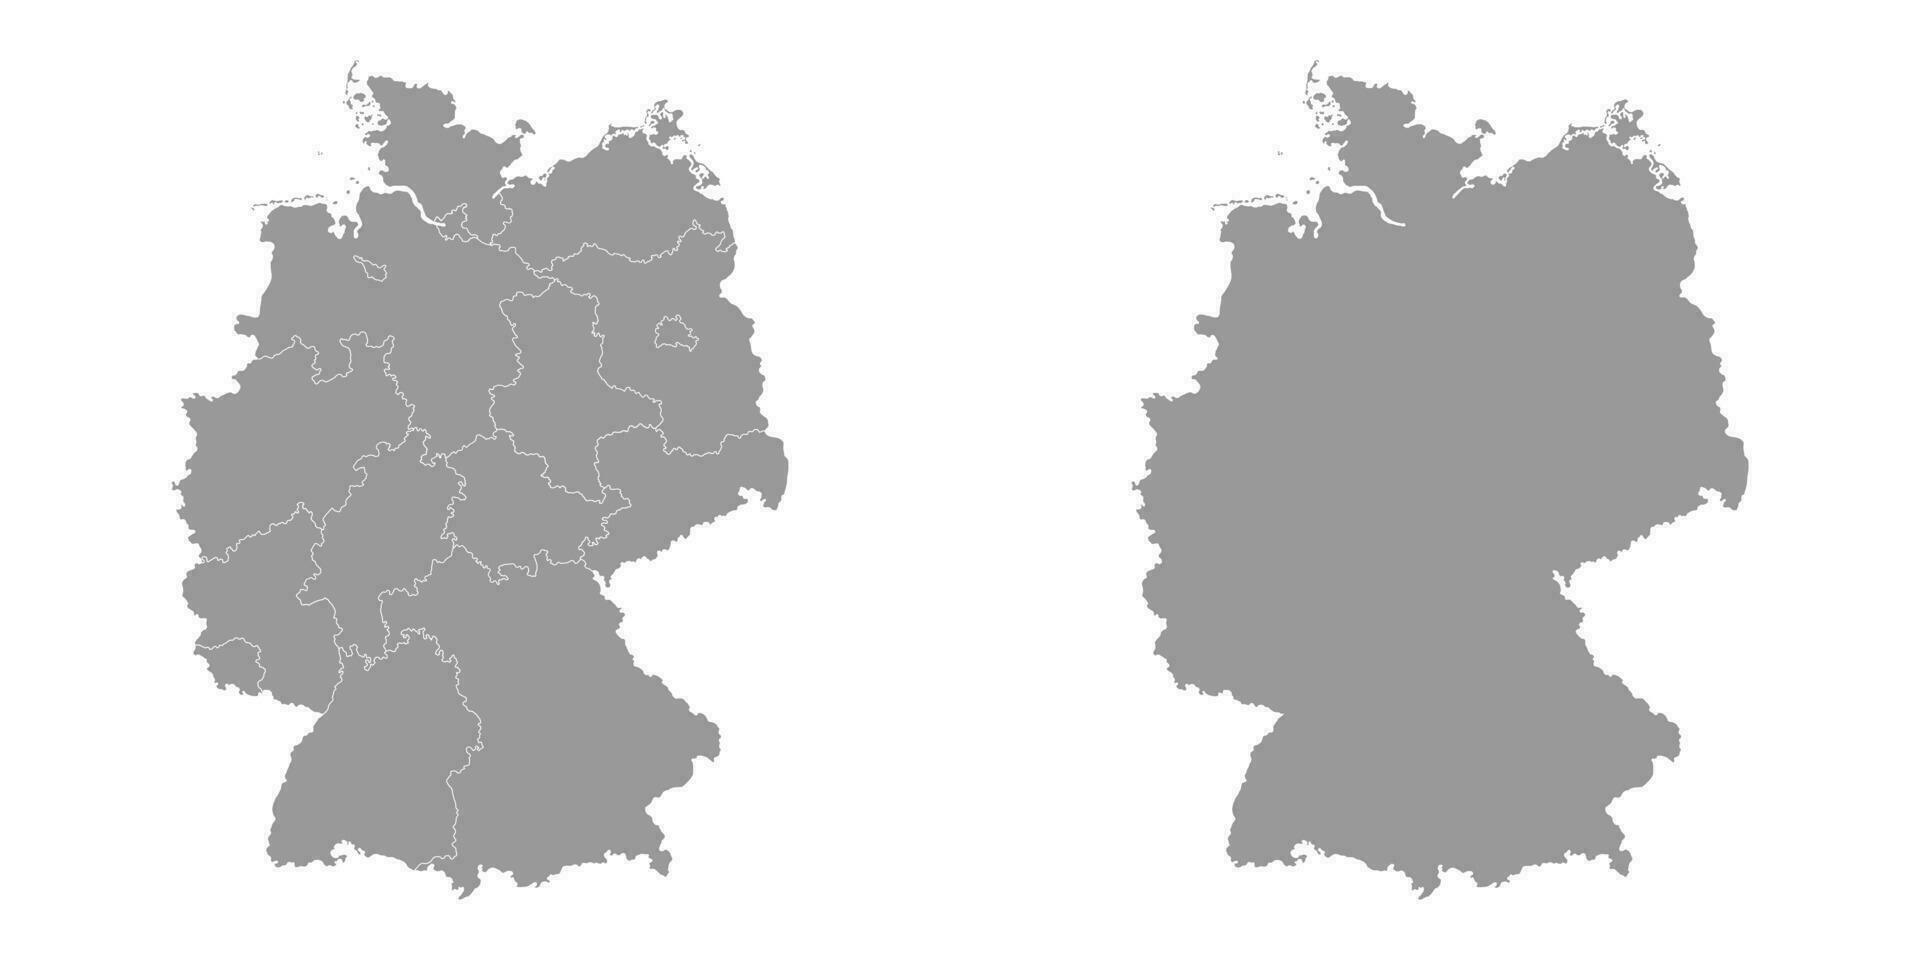 Duitsland grijs kaart met Regio's. vector illustratie.